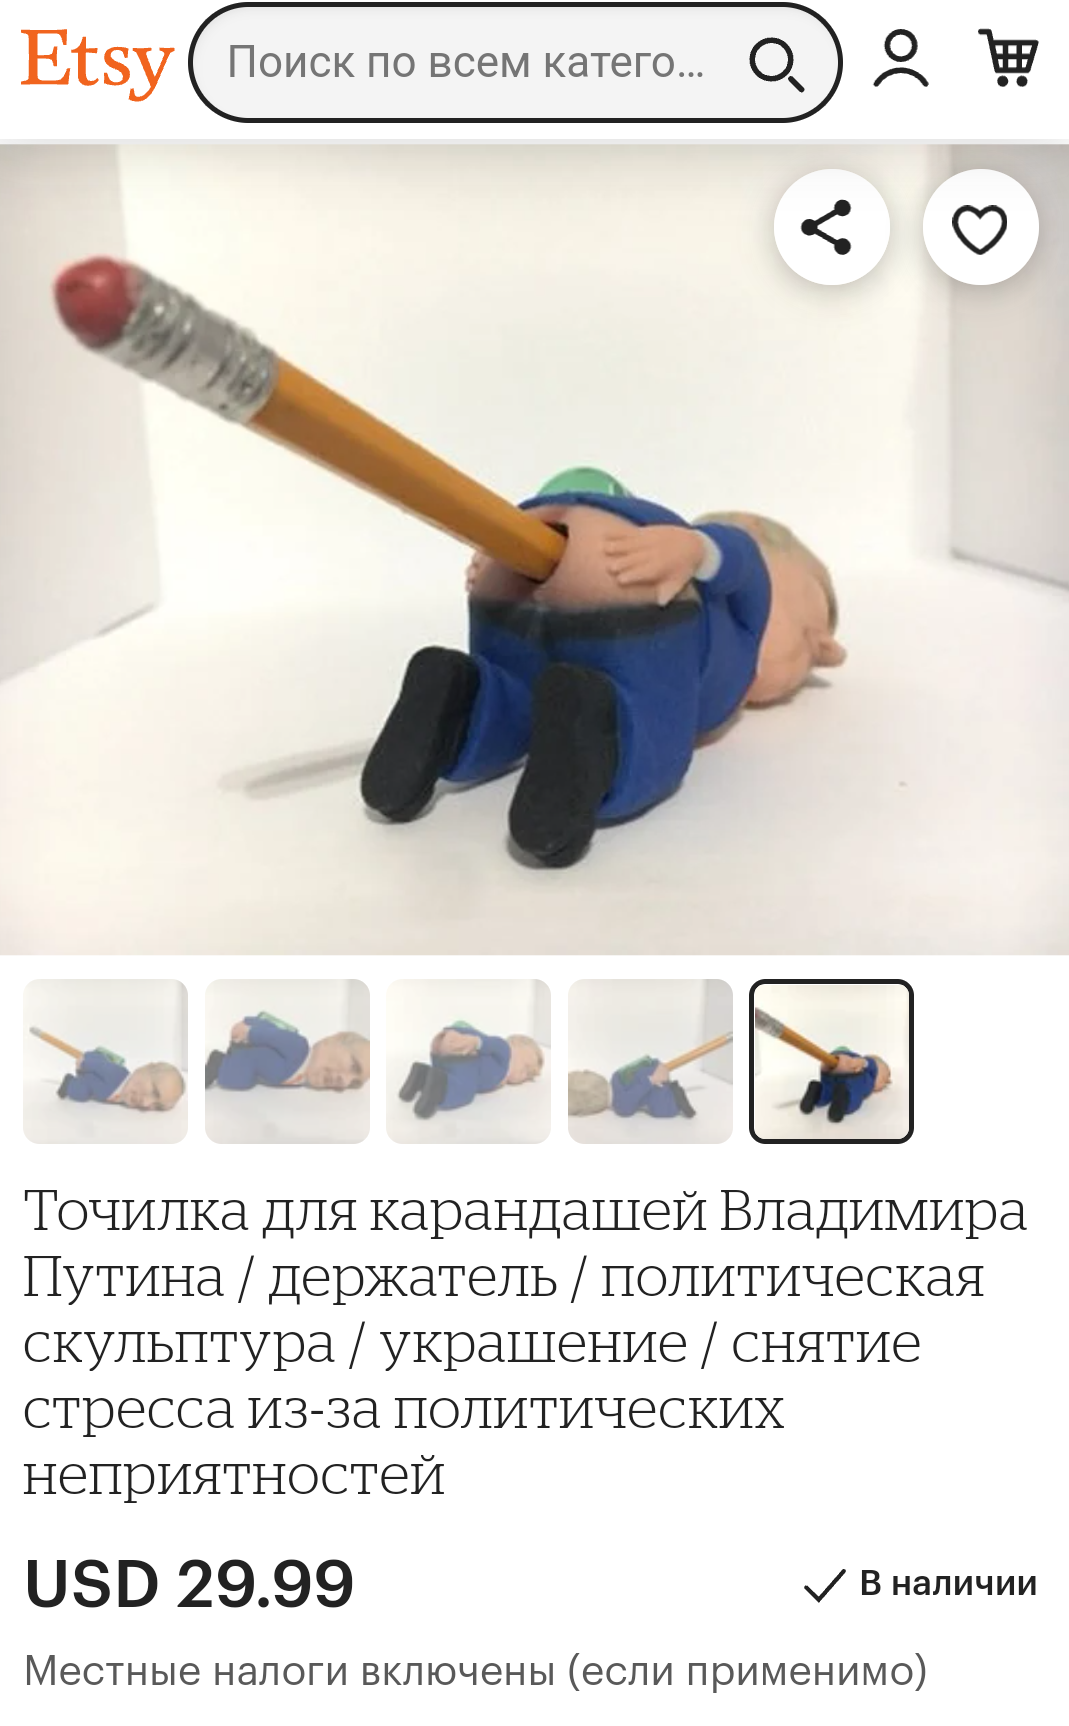 Точилка в виде стоящего на коленях голозадого Путина стала рекордсменом канцелярских продаж 